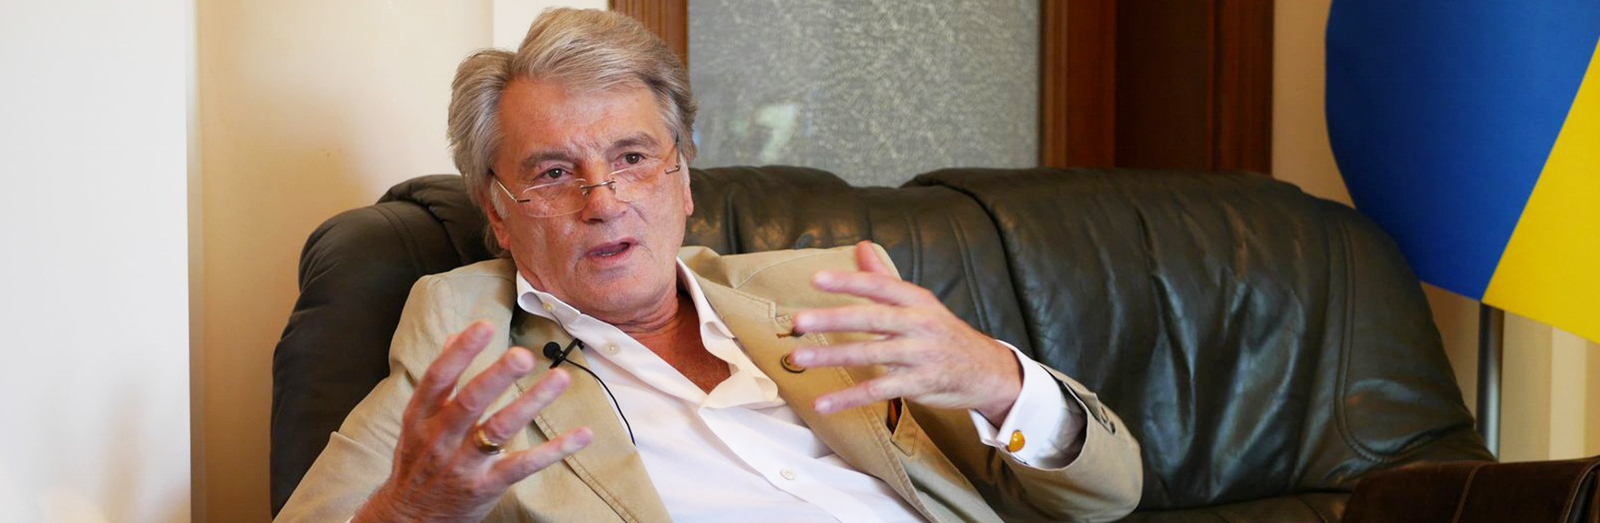 Фактчек Ющенко: Как экс-президент и банкир ориентируется в экономике?